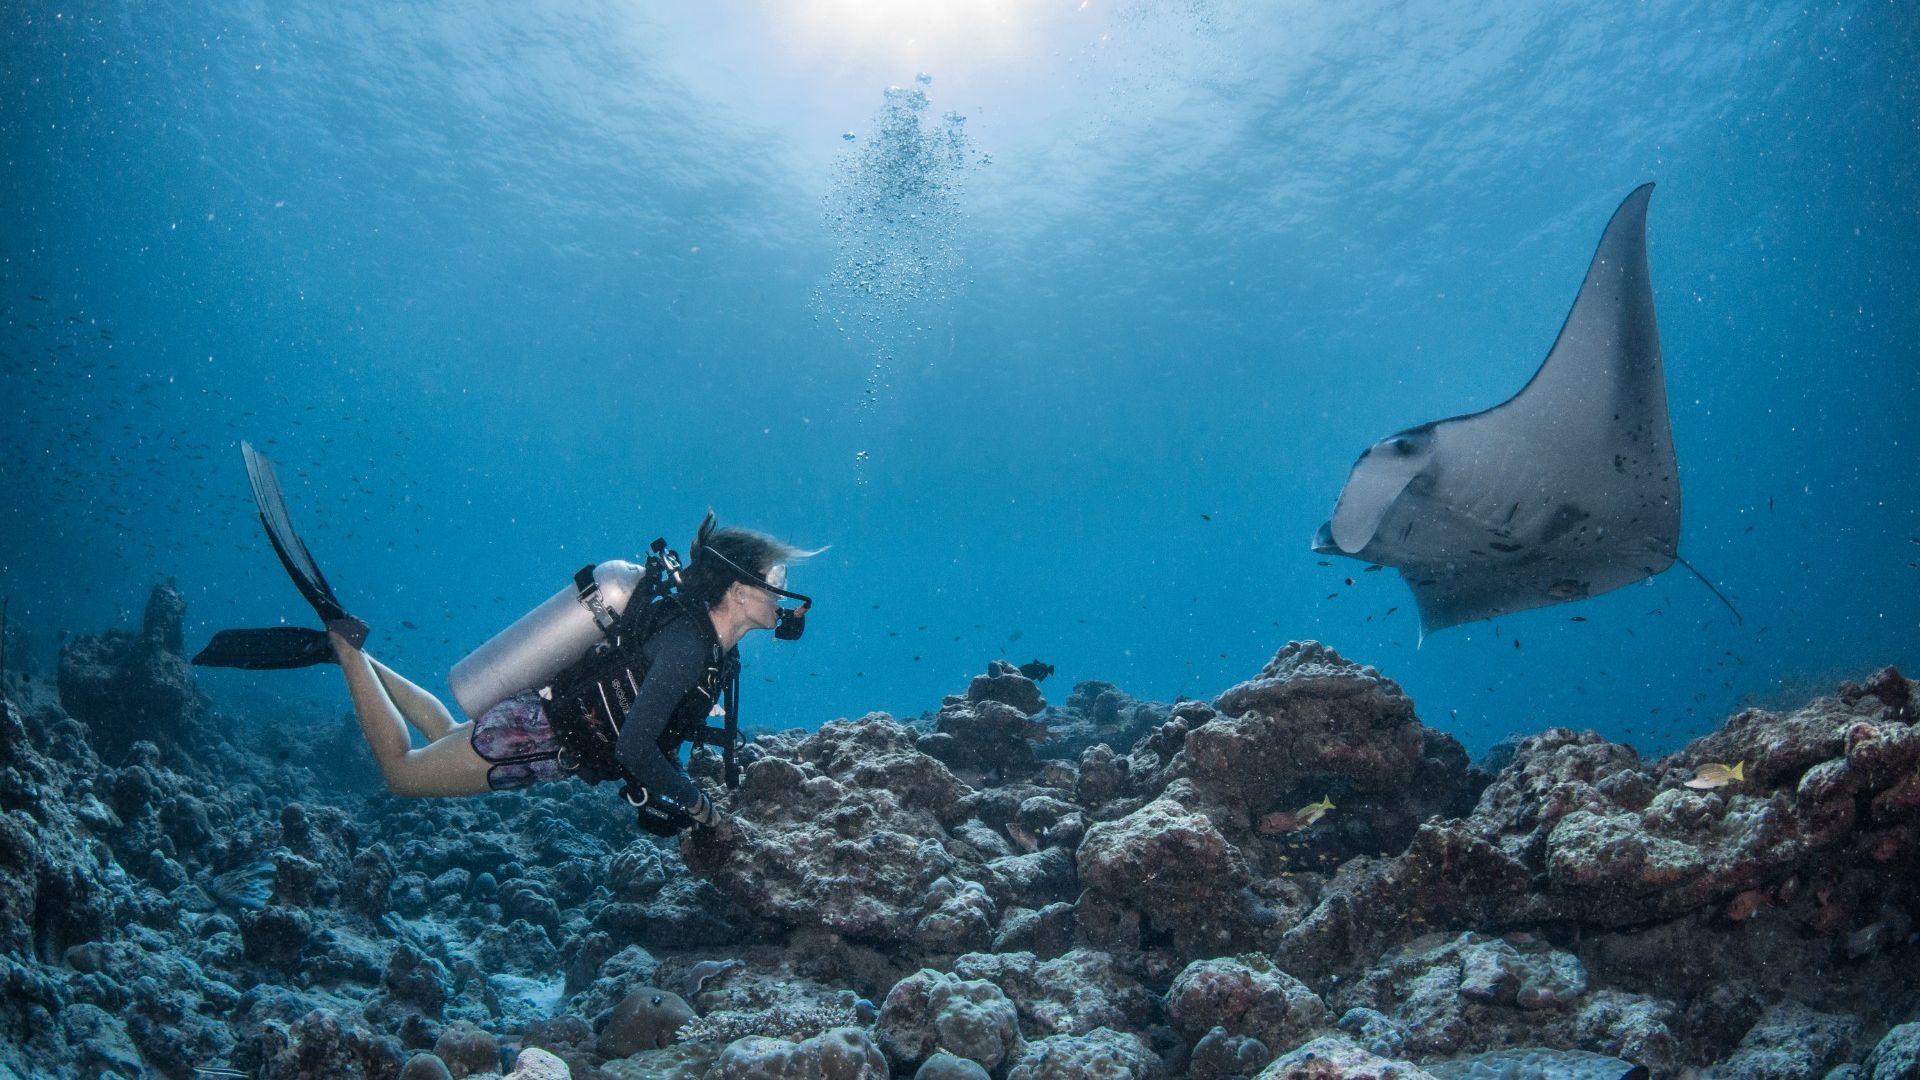 Swimming with mantas | InterContinental Maldives Resort